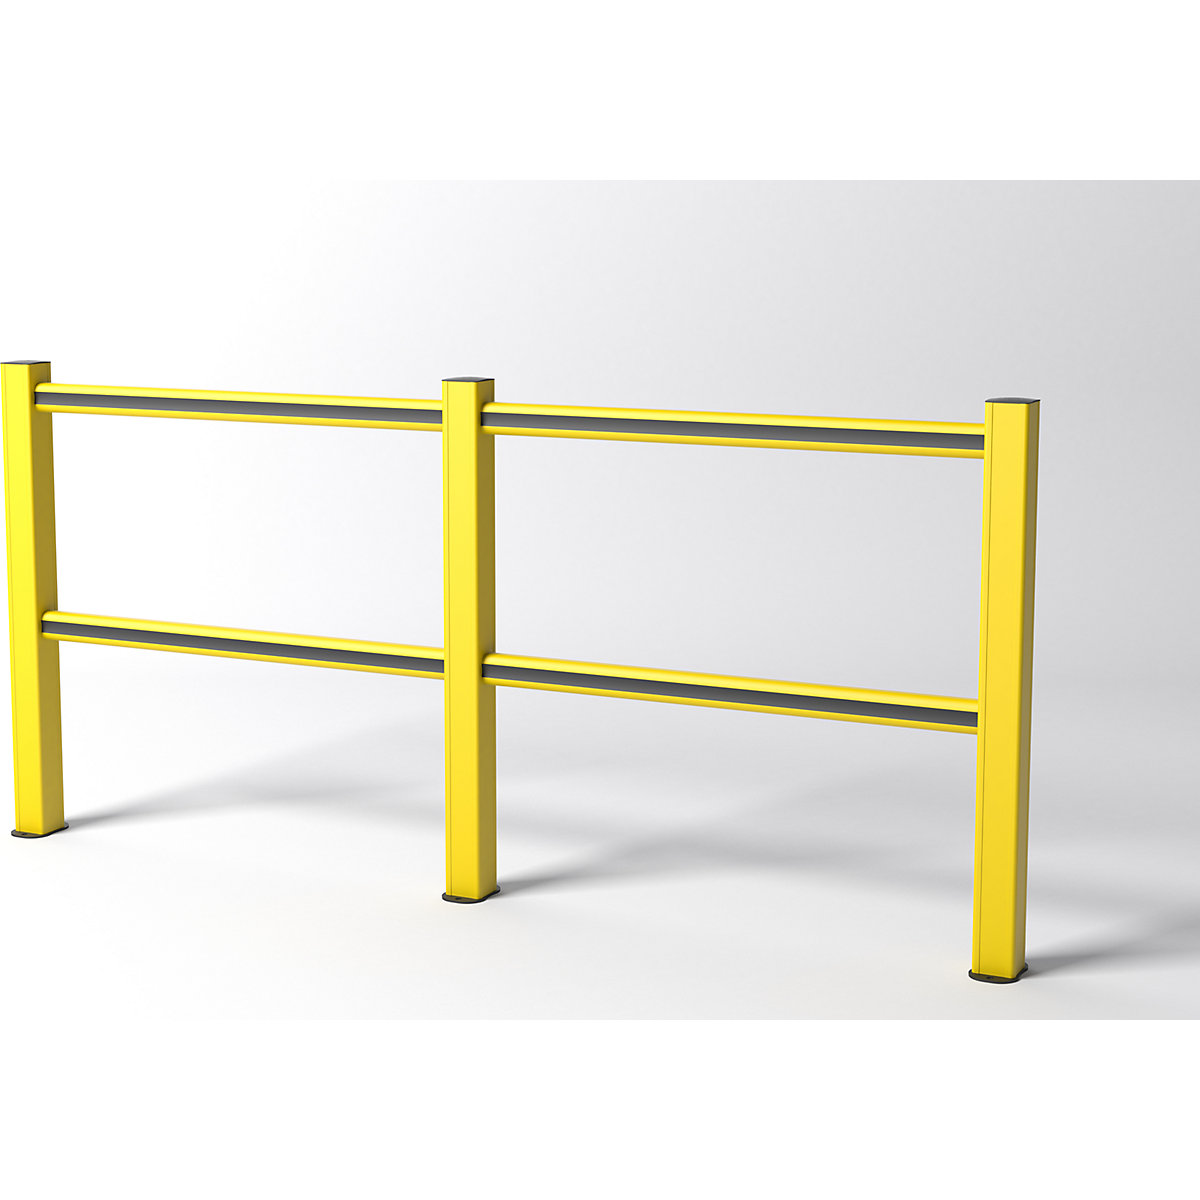 FLEX IMPACT railing, gele palen – geel/zwarte schoren, breedte 2500 mm-3